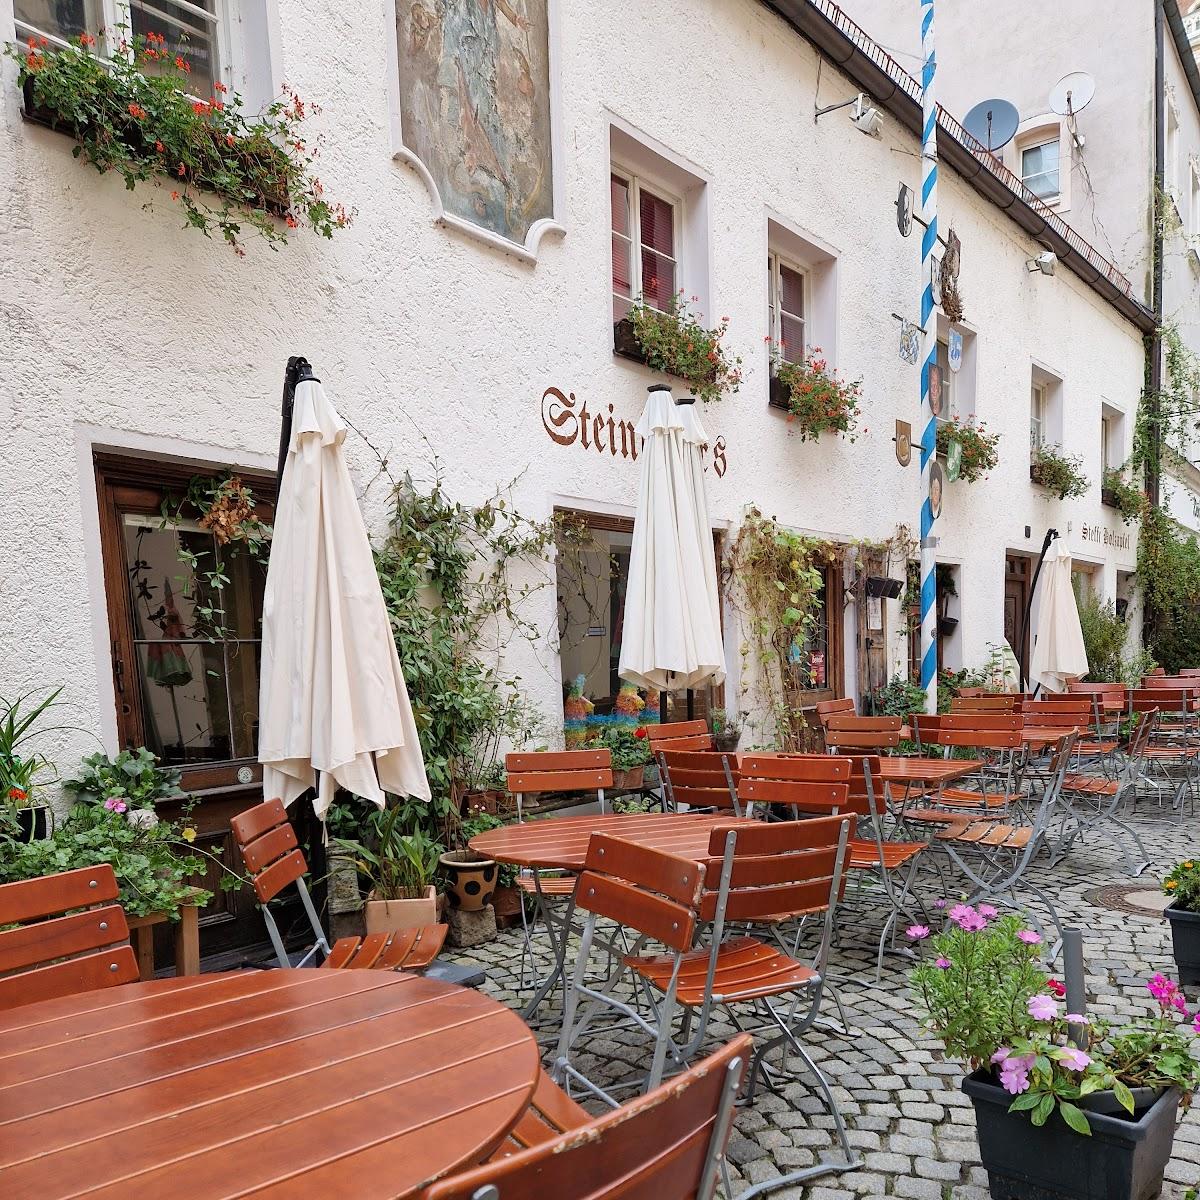 Restaurant "Cafe Steiningers" in Straubing